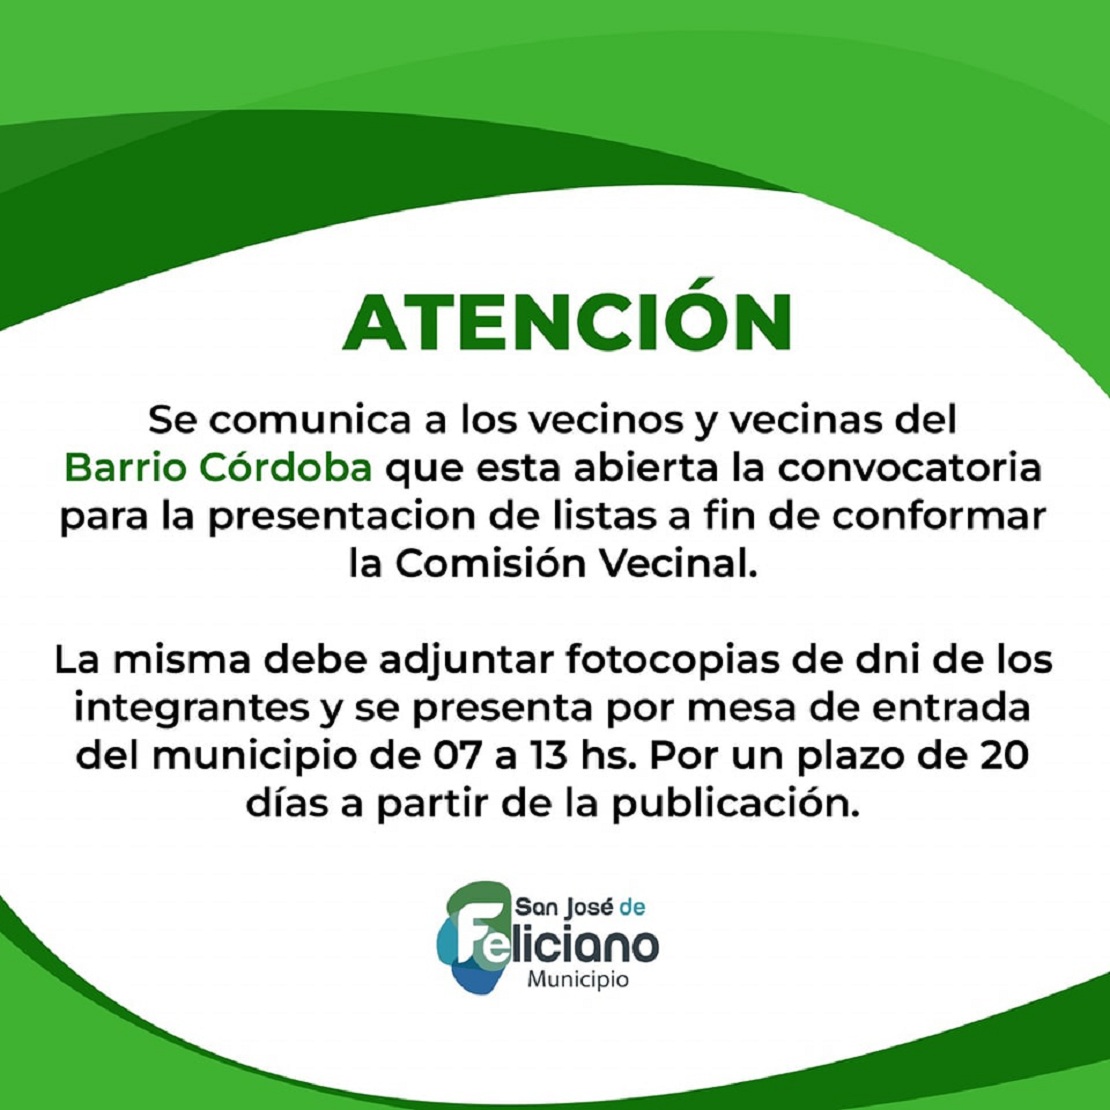 Información importante para los vecinos y vecinas del barrio Córdoba.